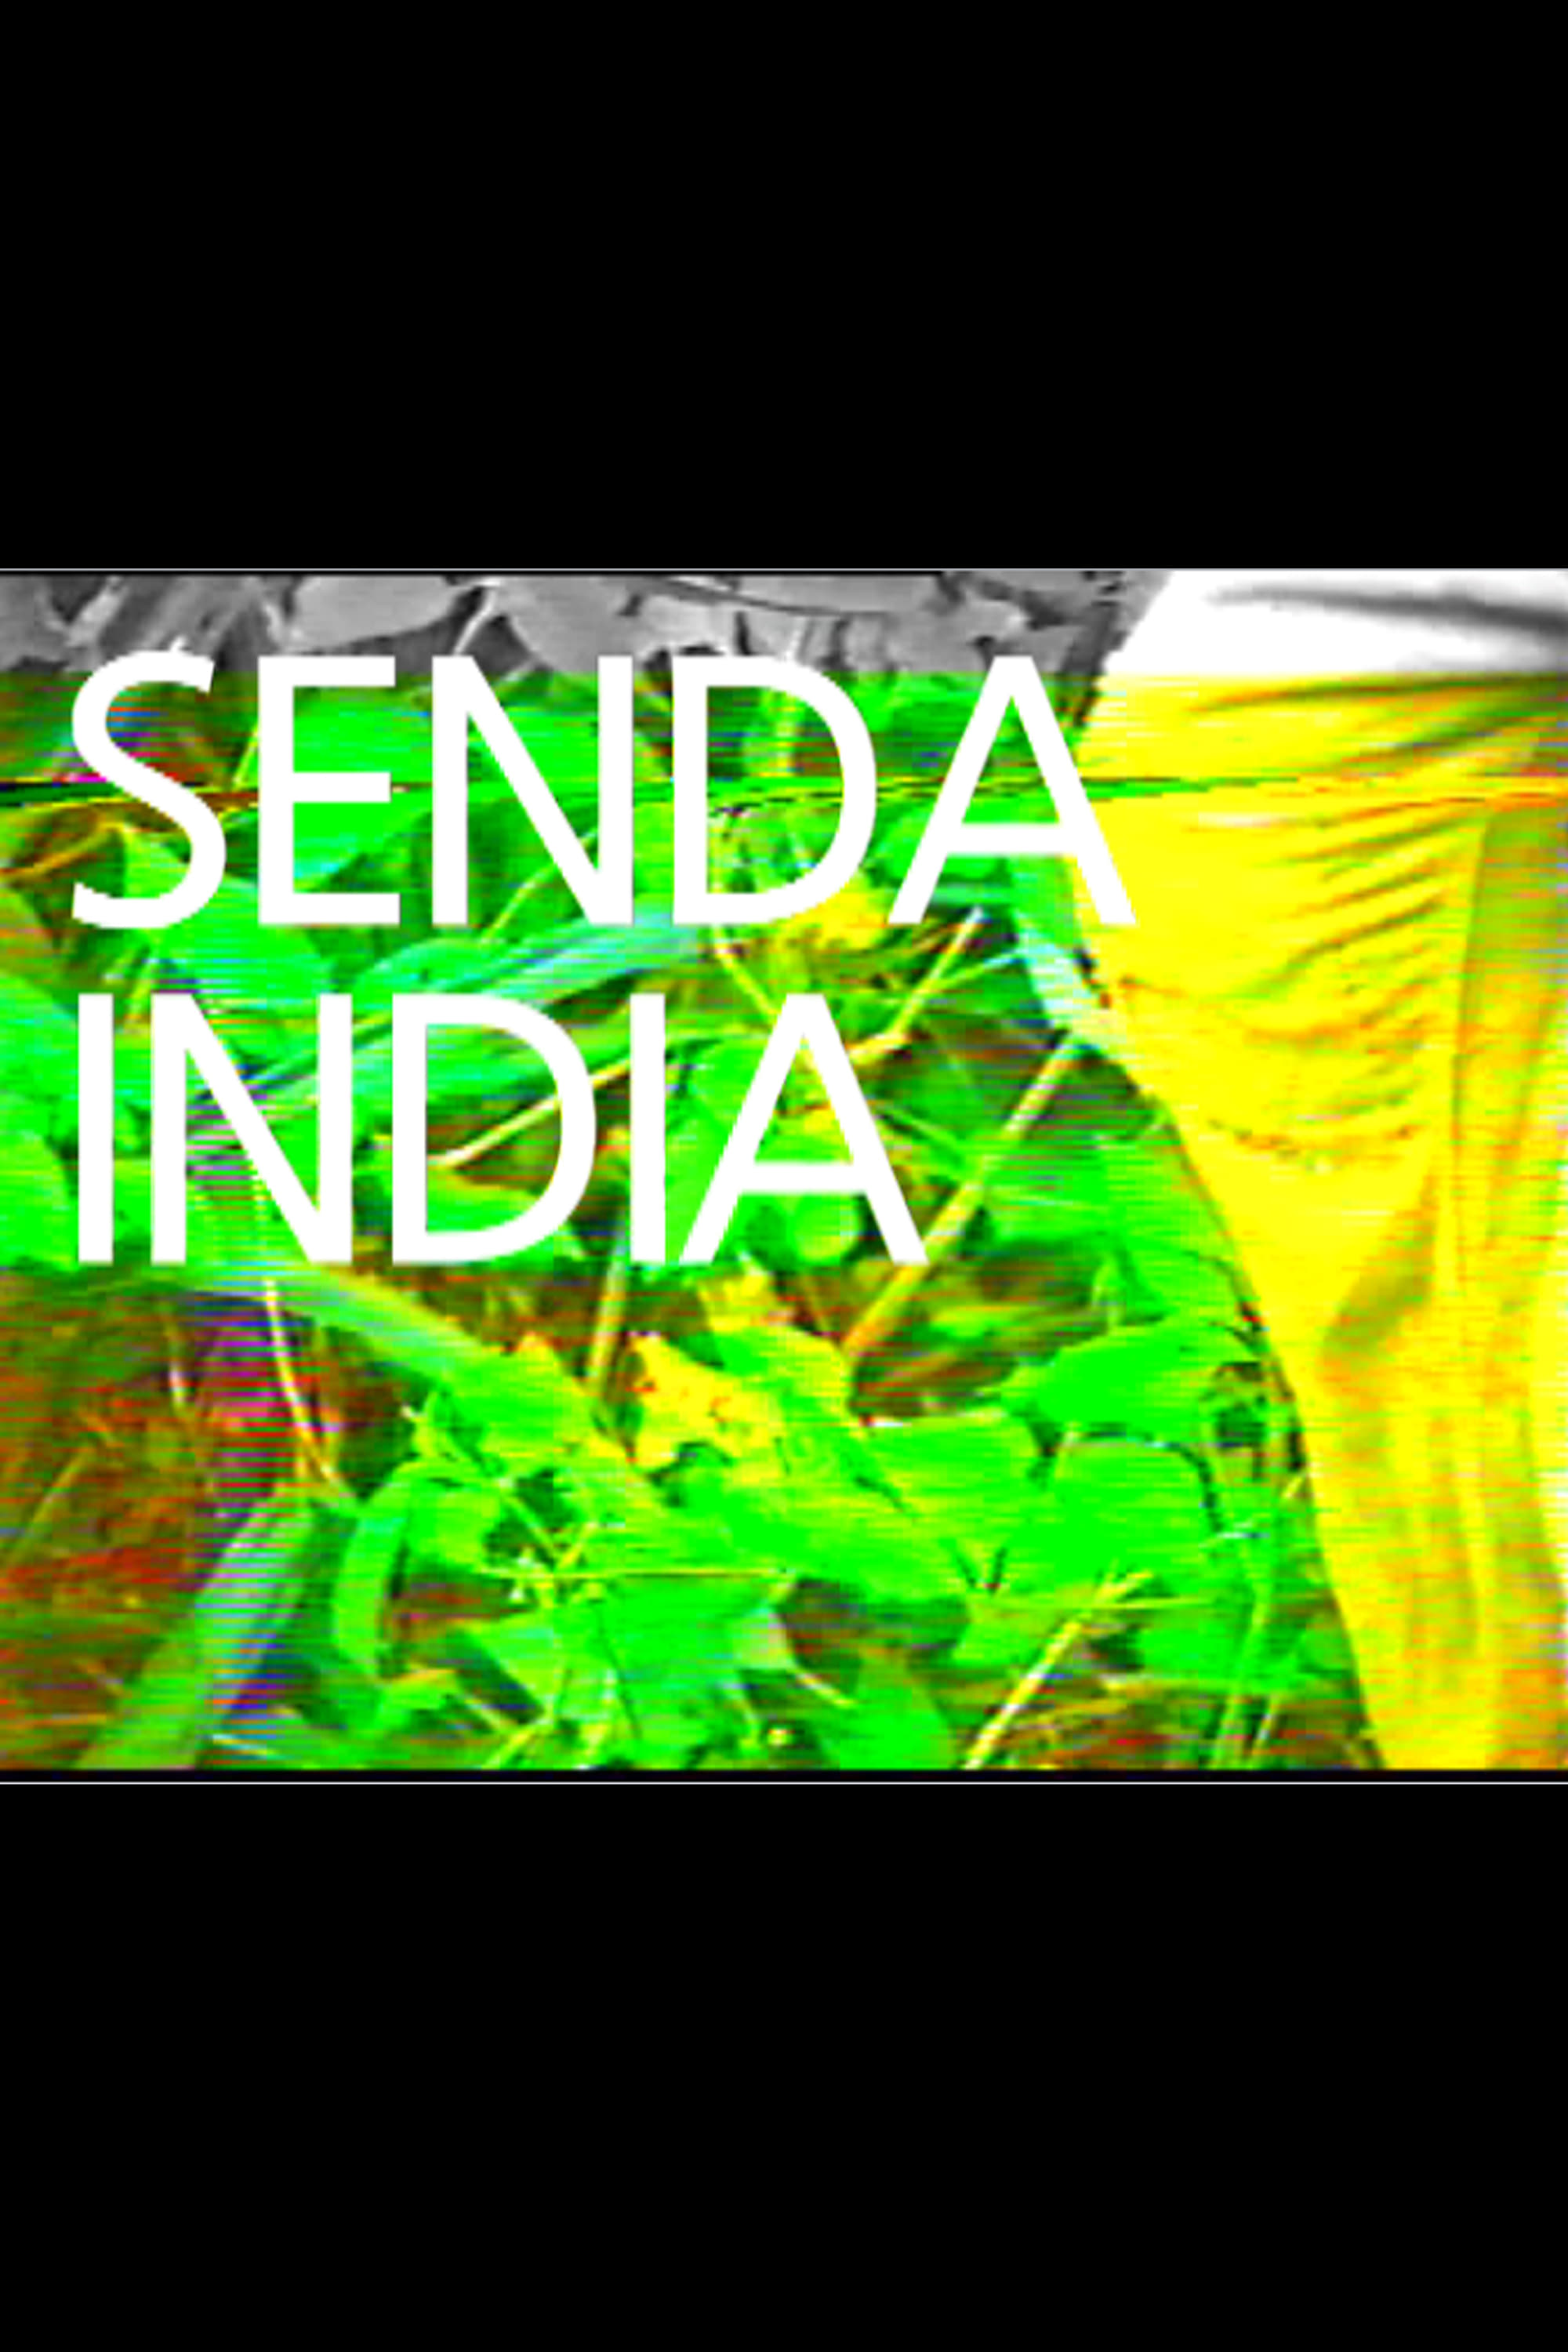 Senda india